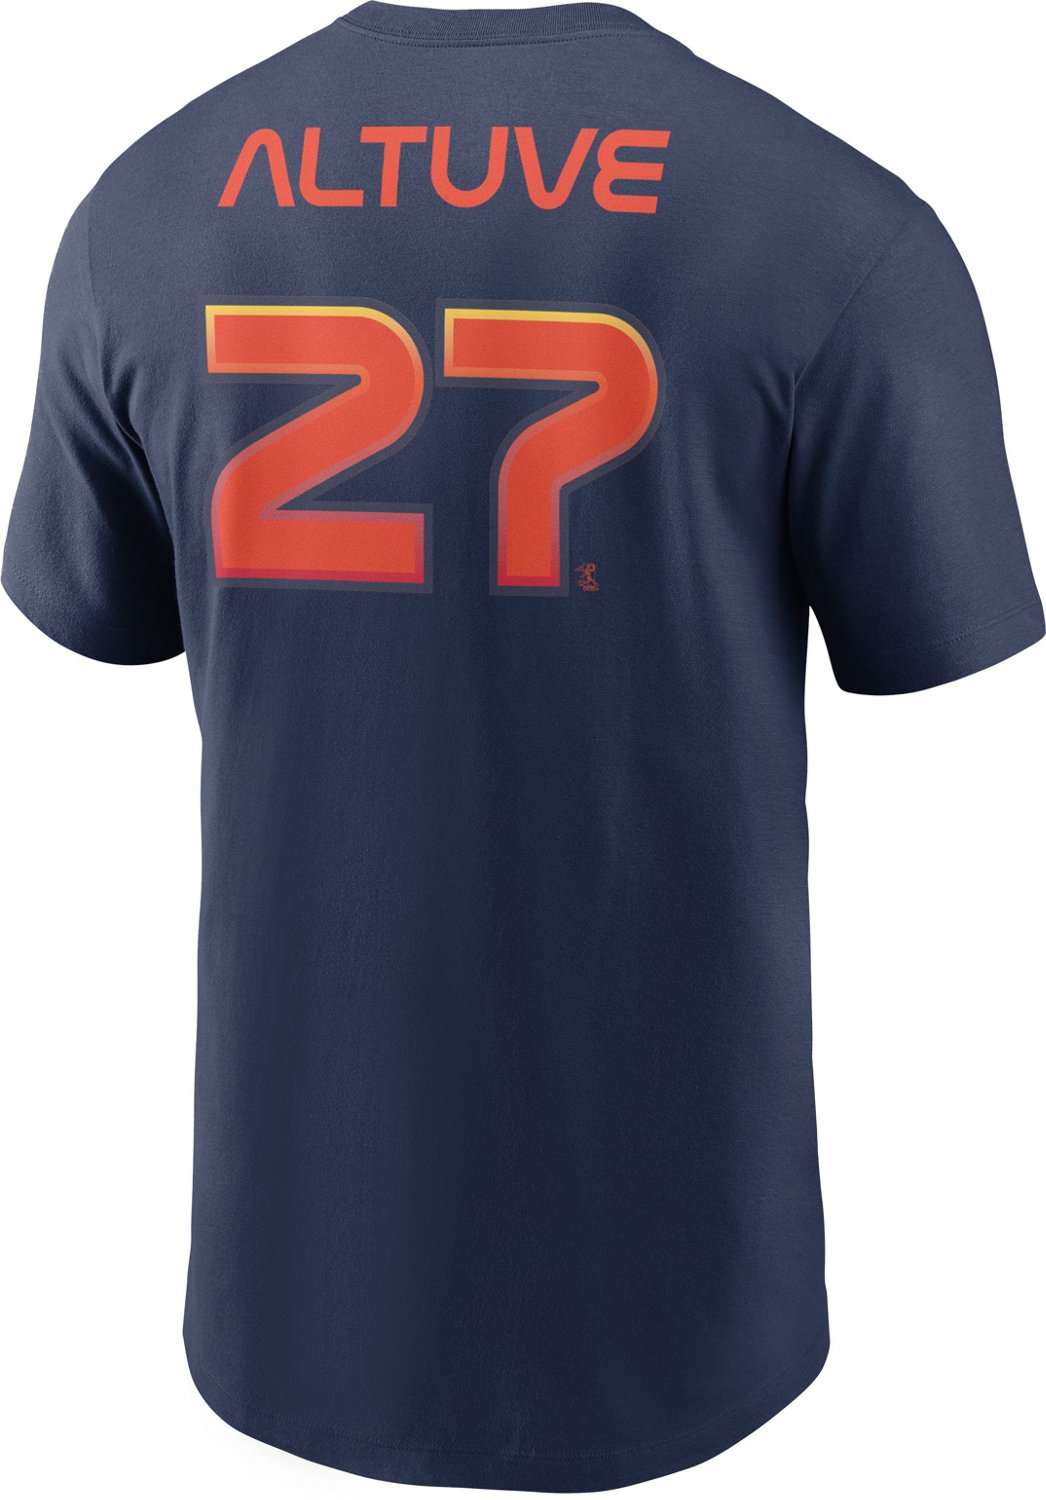 Nike Men's Houston Astros Altuve City Connect Graphic T-shirt